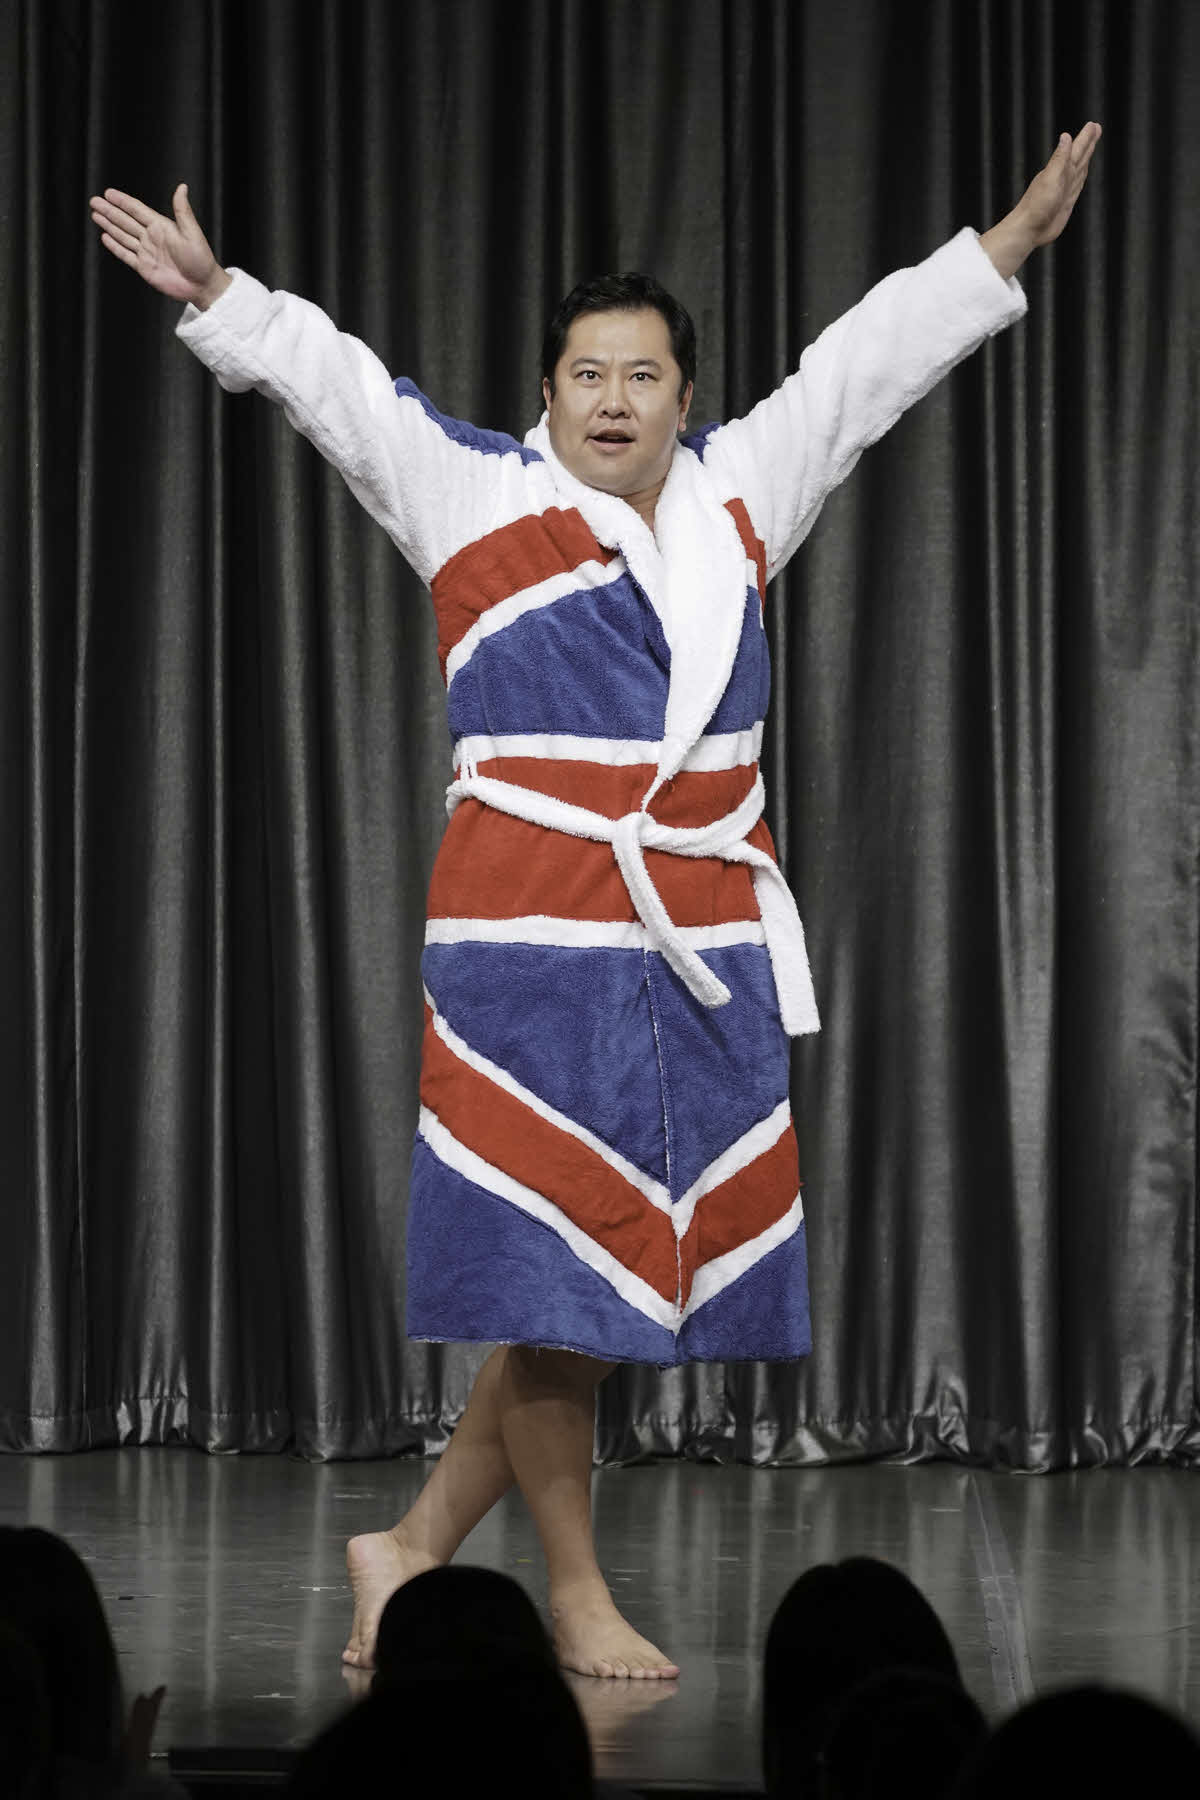 英国の人気オーディション番組「ブリテンズ・ゴット・タレント」で決勝進出後、劇場公演に初出演して英国国旗柄のバスローブ姿で登場した、とにかく明るい安村